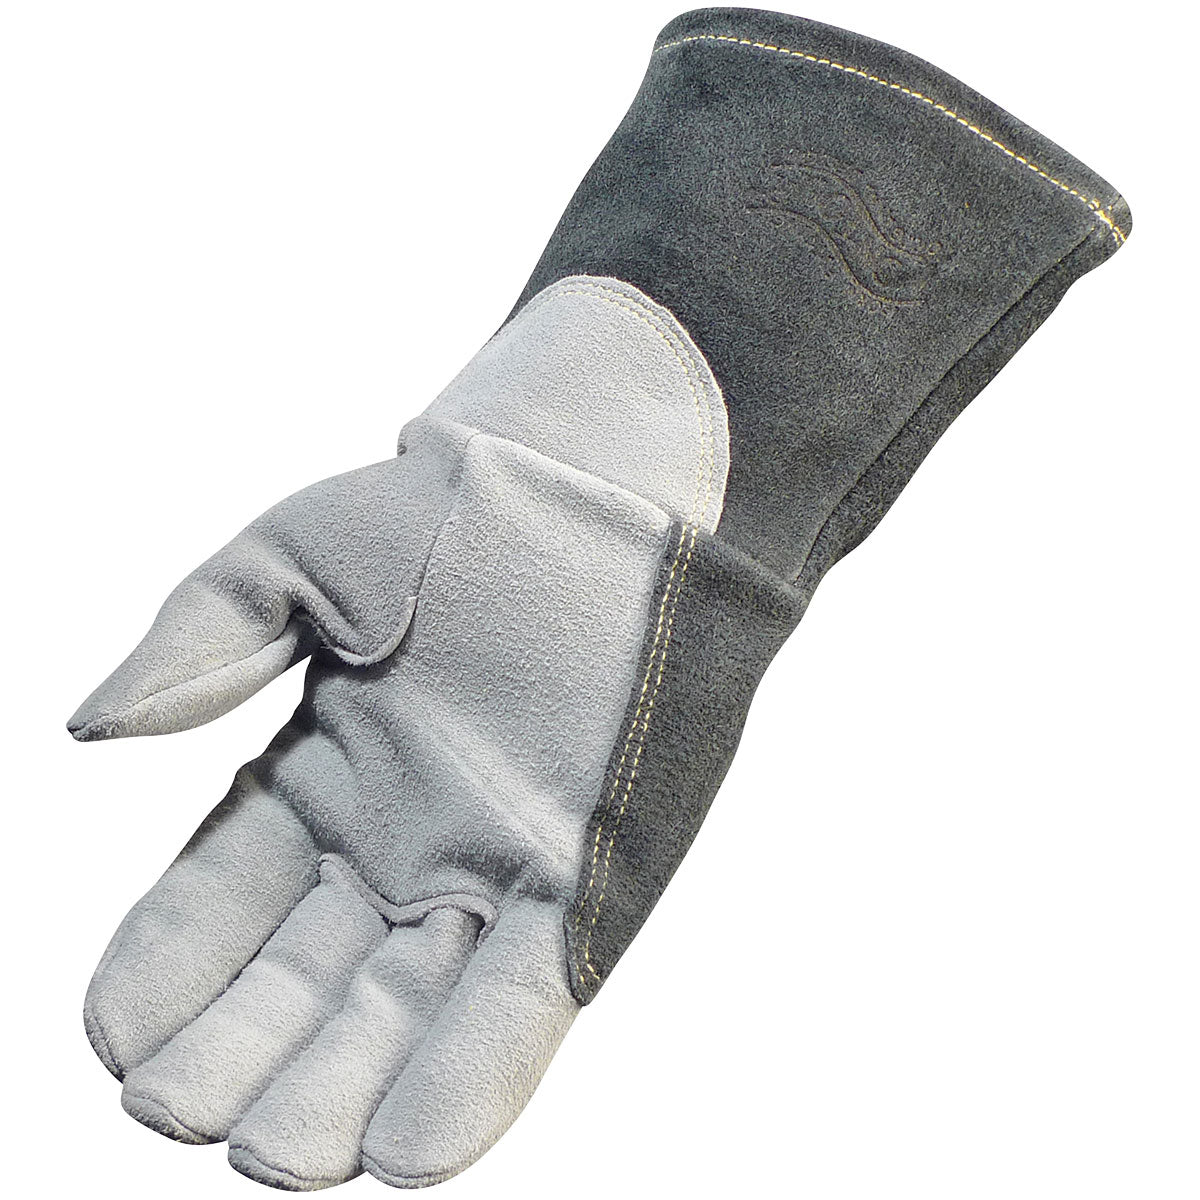 Premium Split Deerskin TIG Welder's Glove with a 4" Gray Extended Cuff